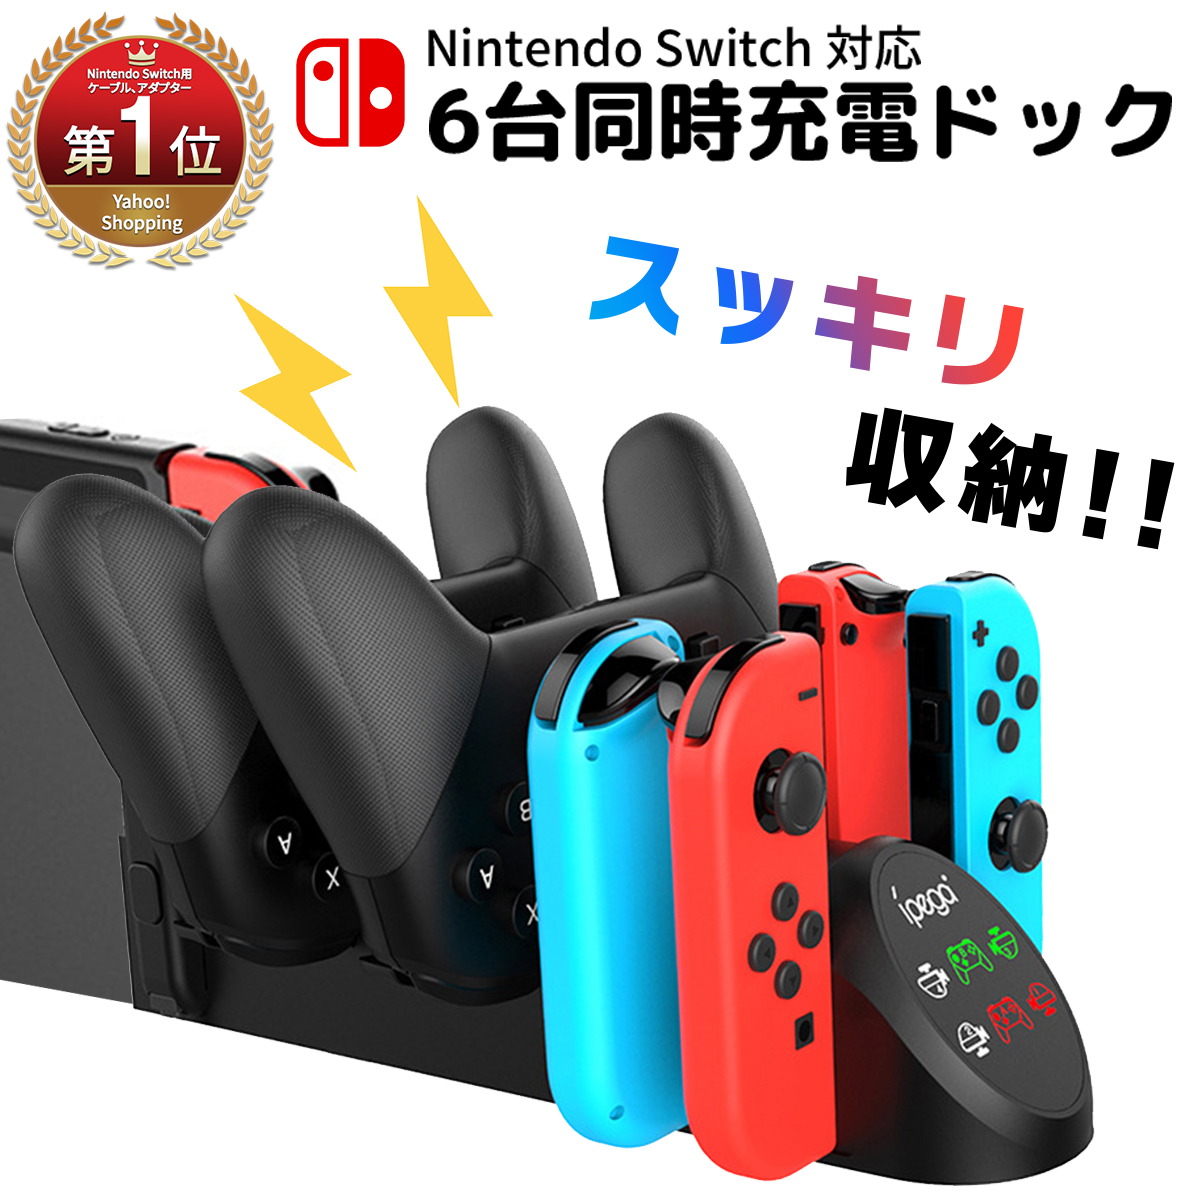 Nintendo Switch コントローラー 充電 6台充電 スイッチ ジョイコン プロコン 充電ドック 充電スタンド